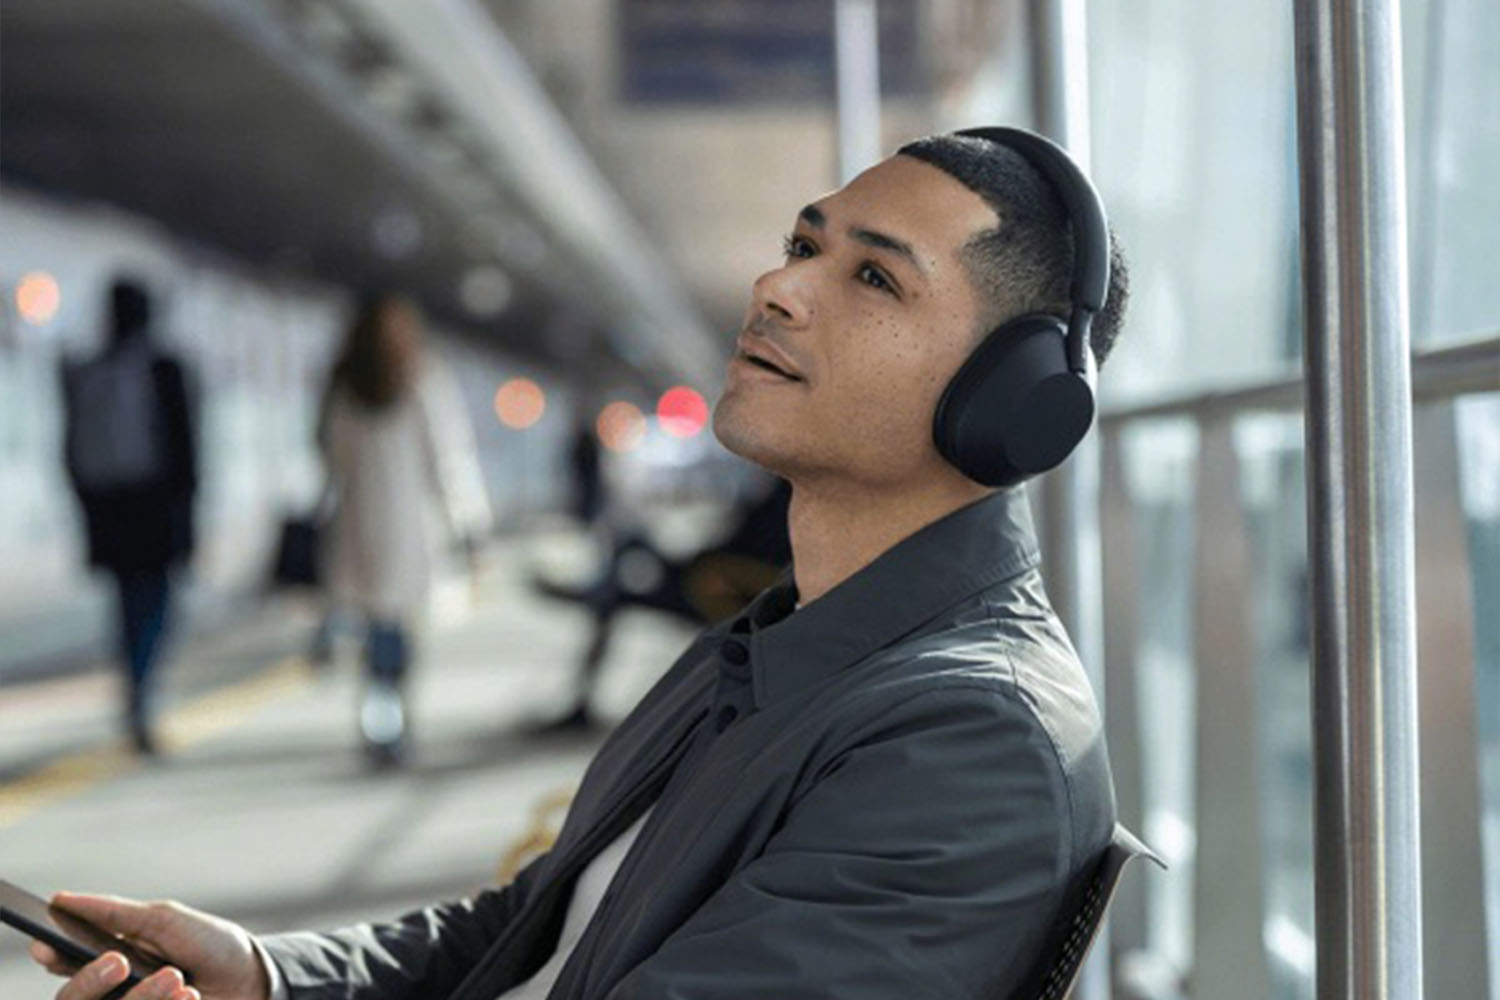 A model wearing the new Sony wireless headphones.